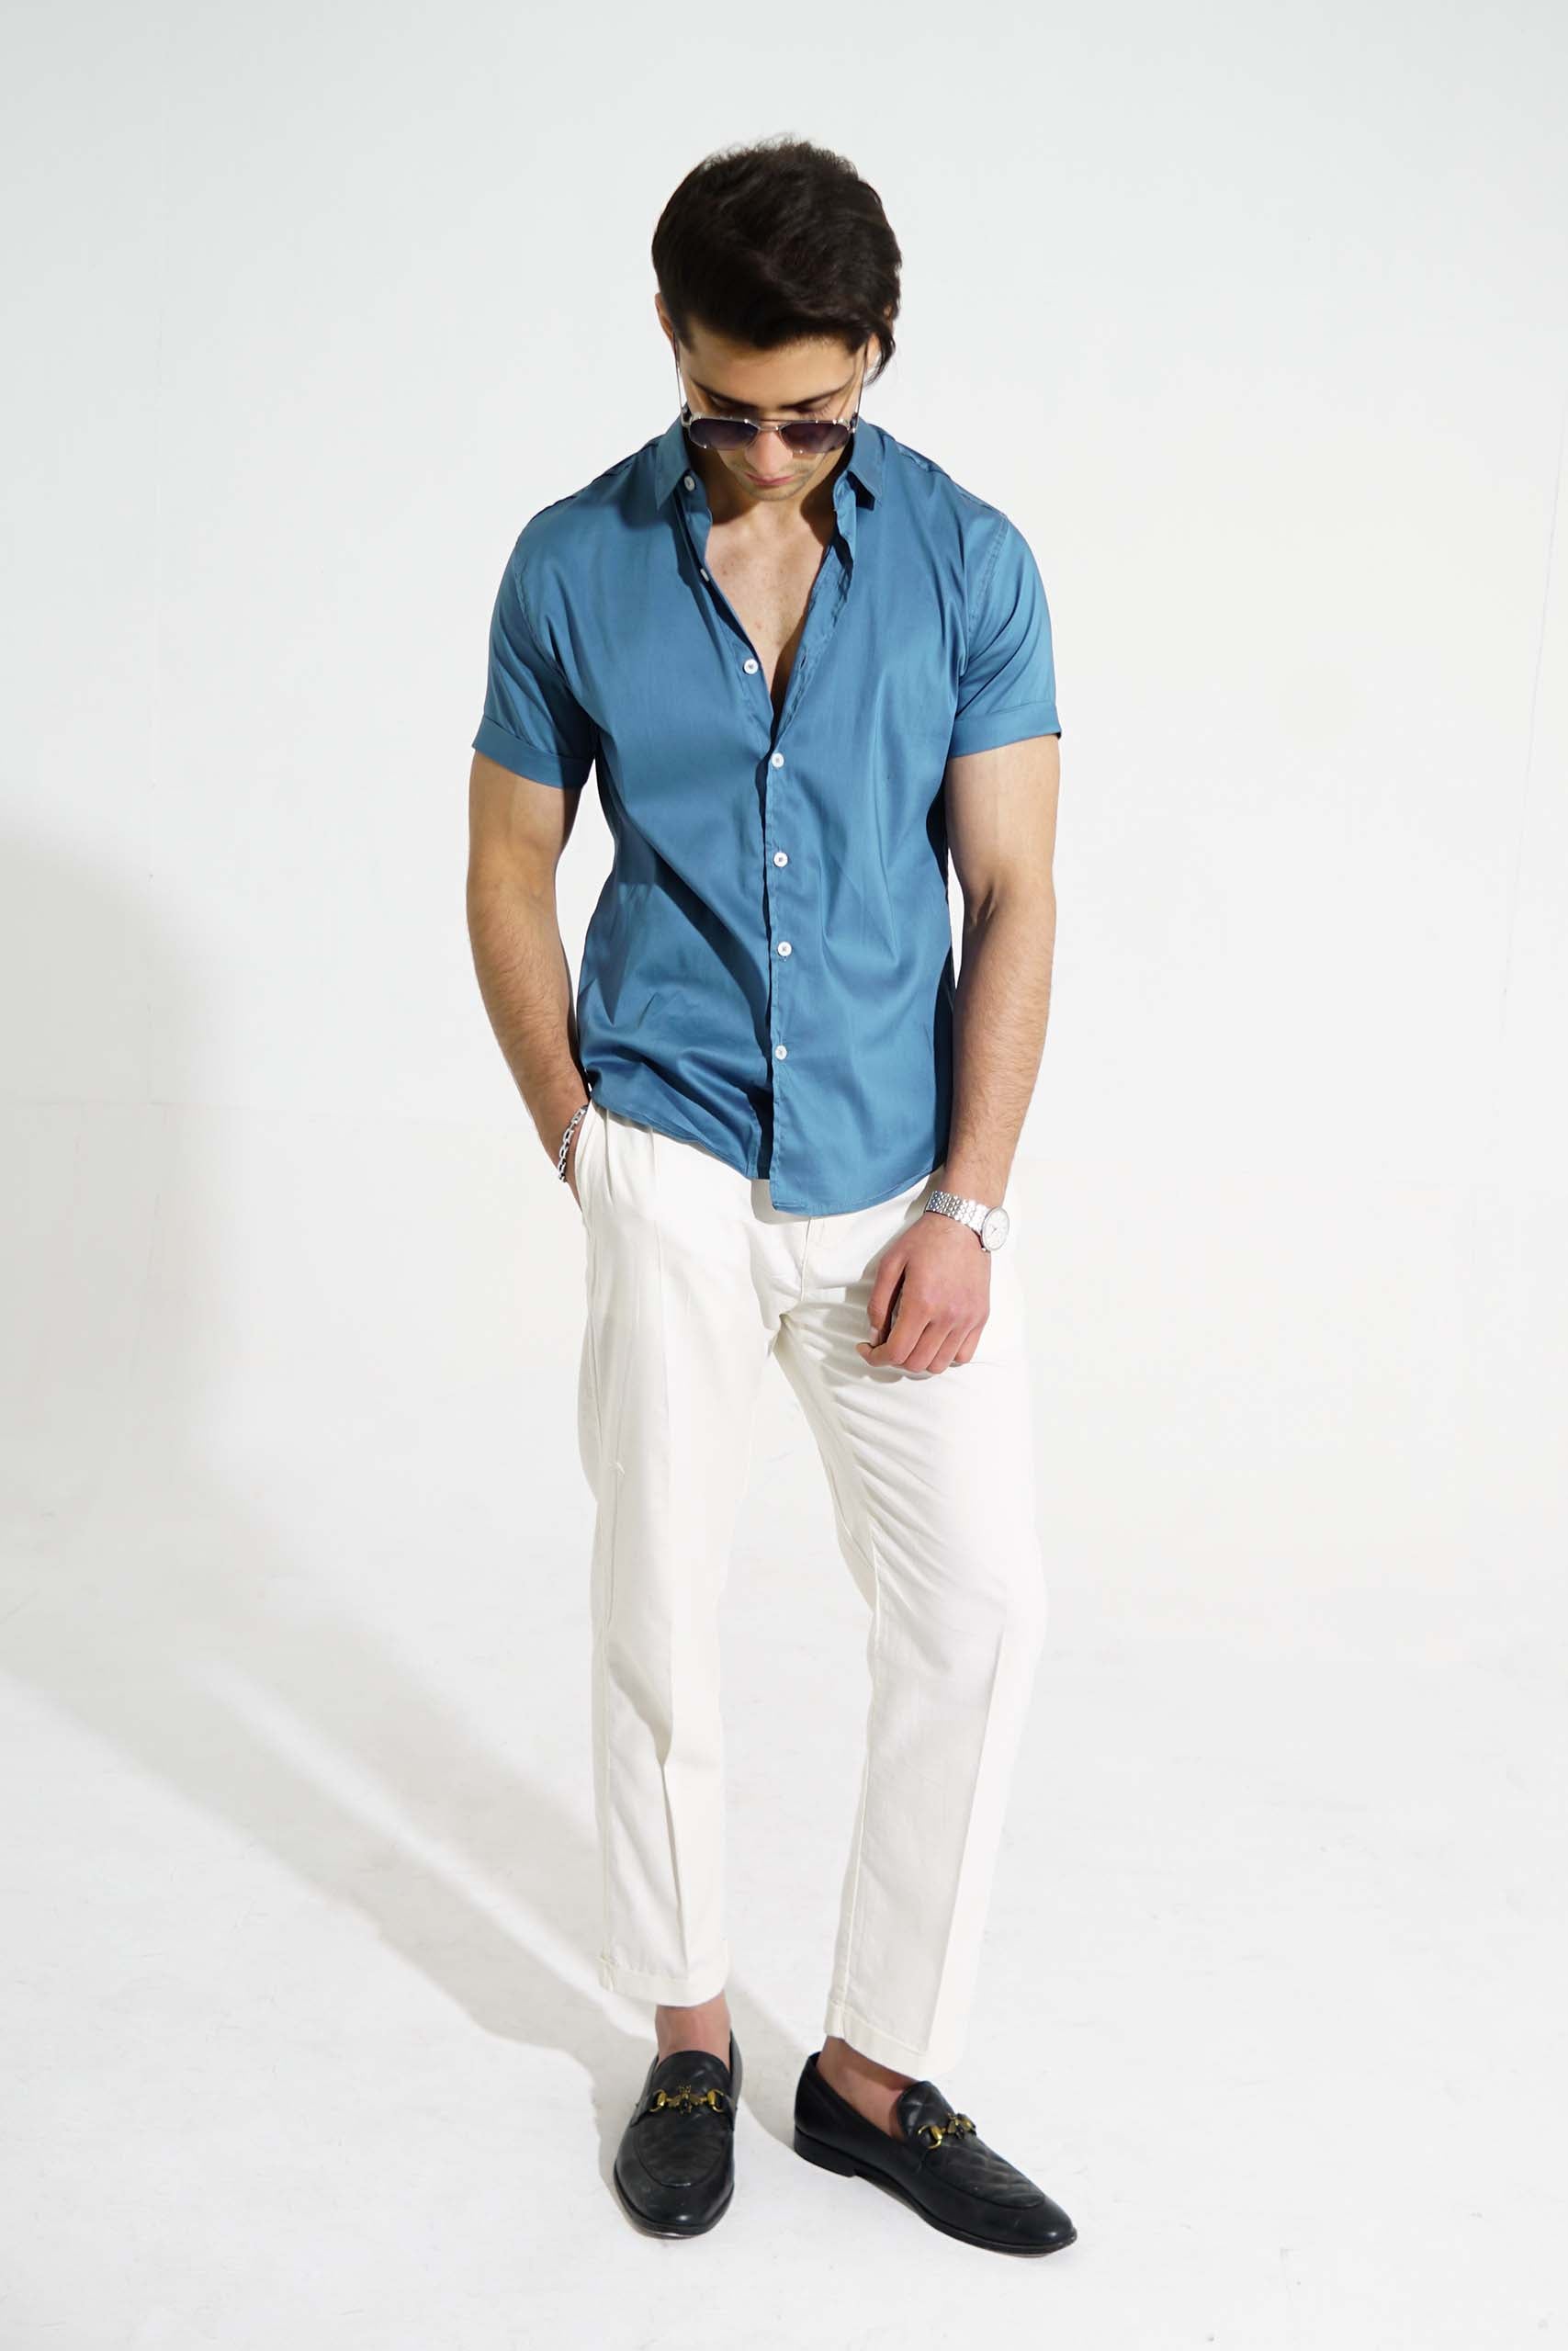 Buy Office Wear Sky Blue Plain Cotton Shirt Online From Surat Wholesale  Shop.